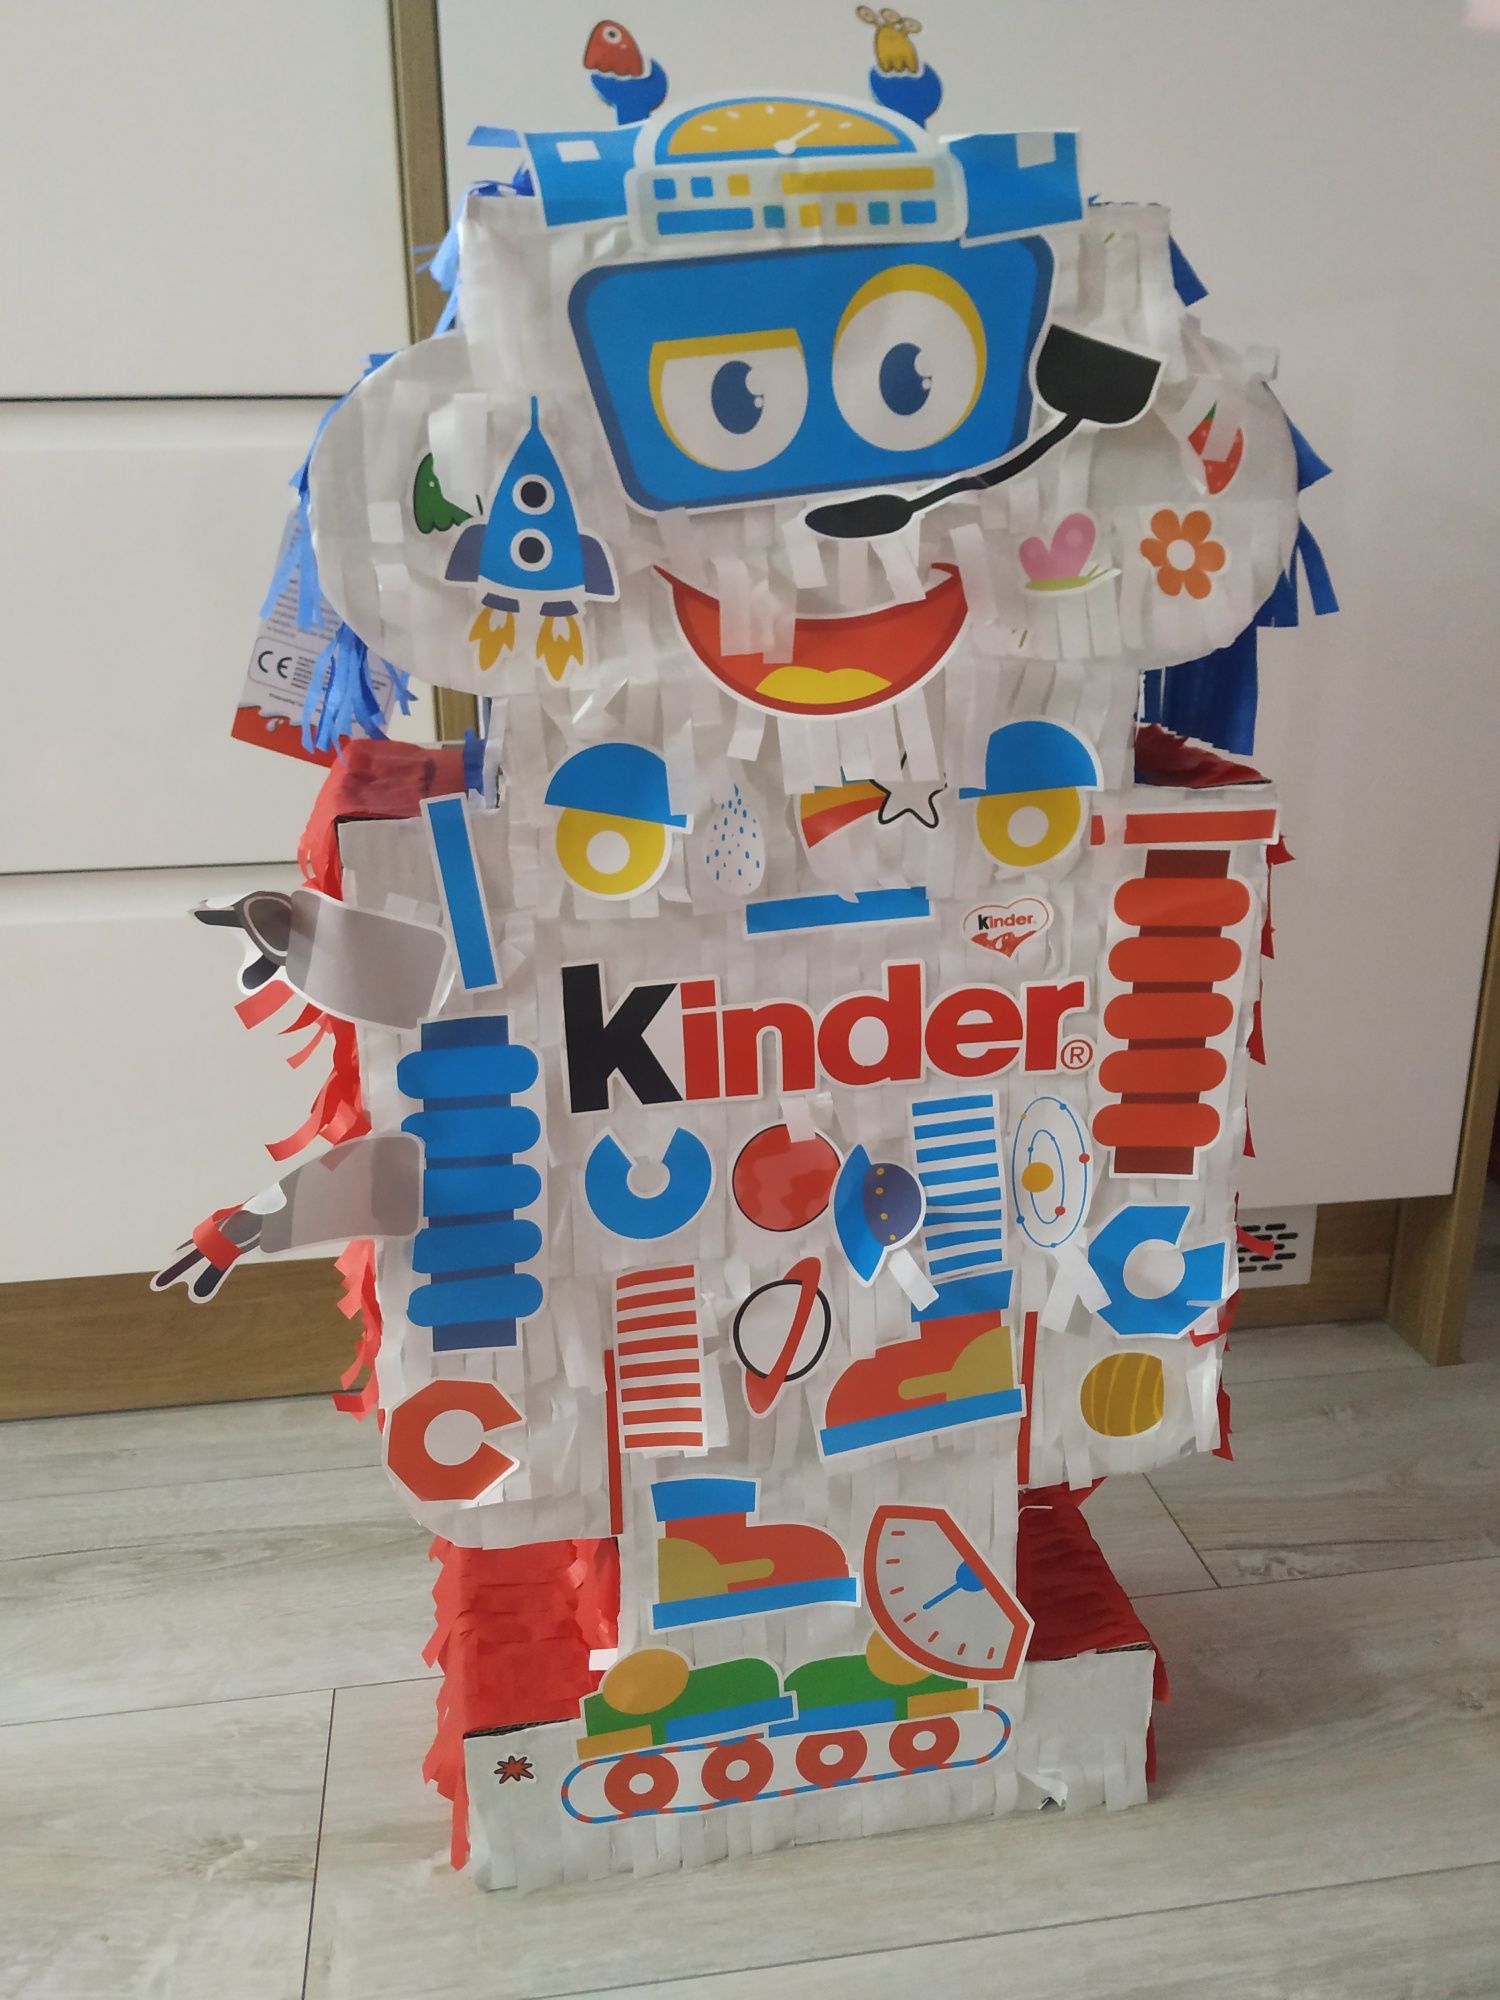 Pianiata Kinder robot urodziny